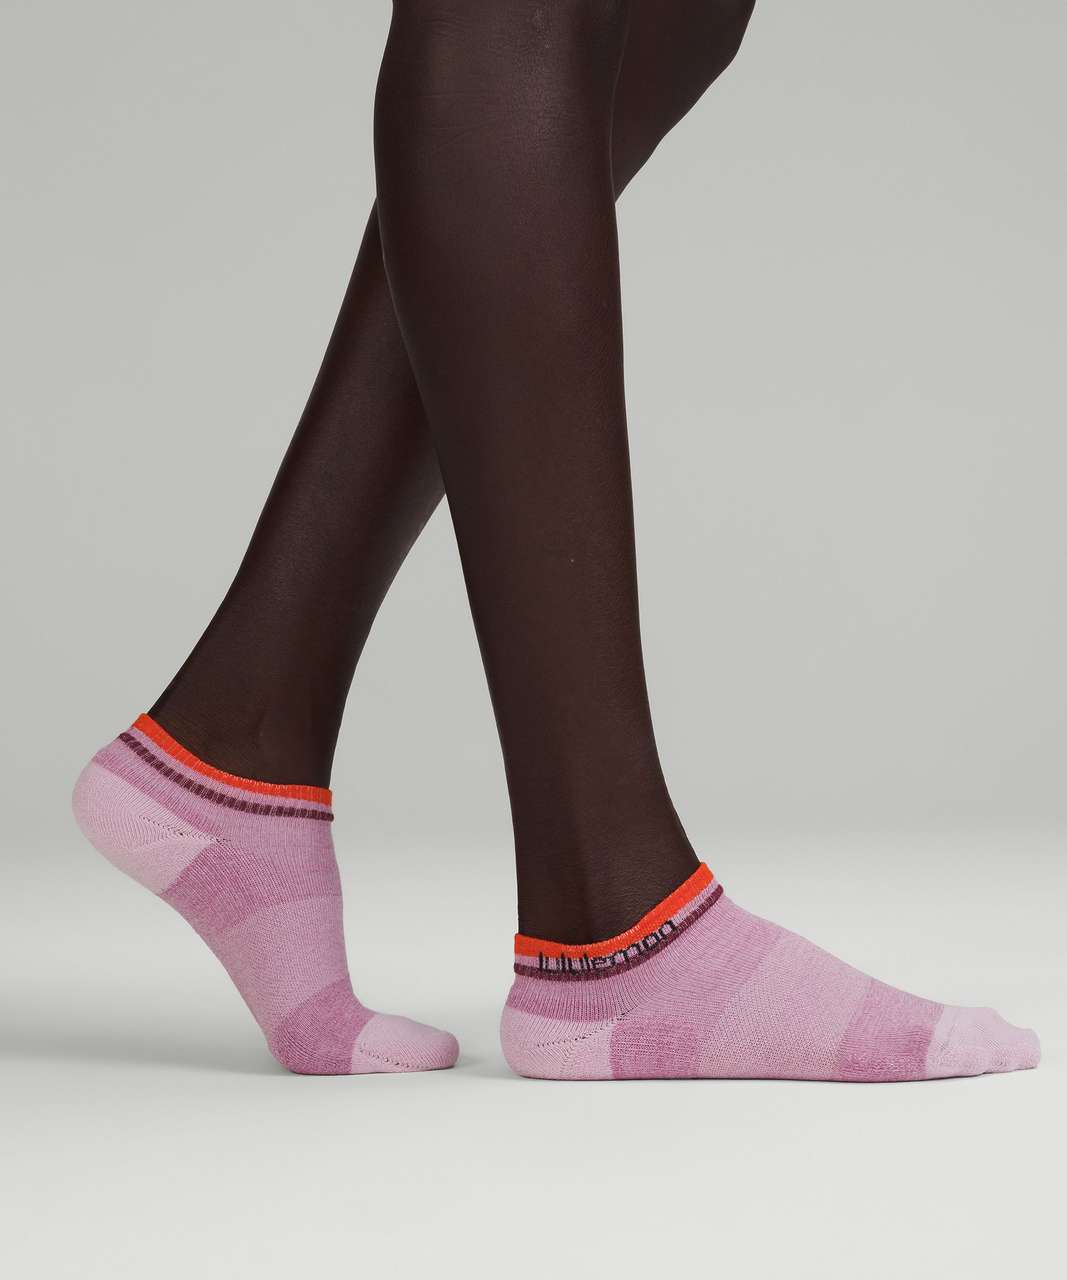 https://storage.googleapis.com/lulu-fanatics/product/83213/1280/lululemon-womens-daily-stride-comfort-ankle-sock-3-pack-velvet-dust-white-solar-orange-060977-441919.jpg